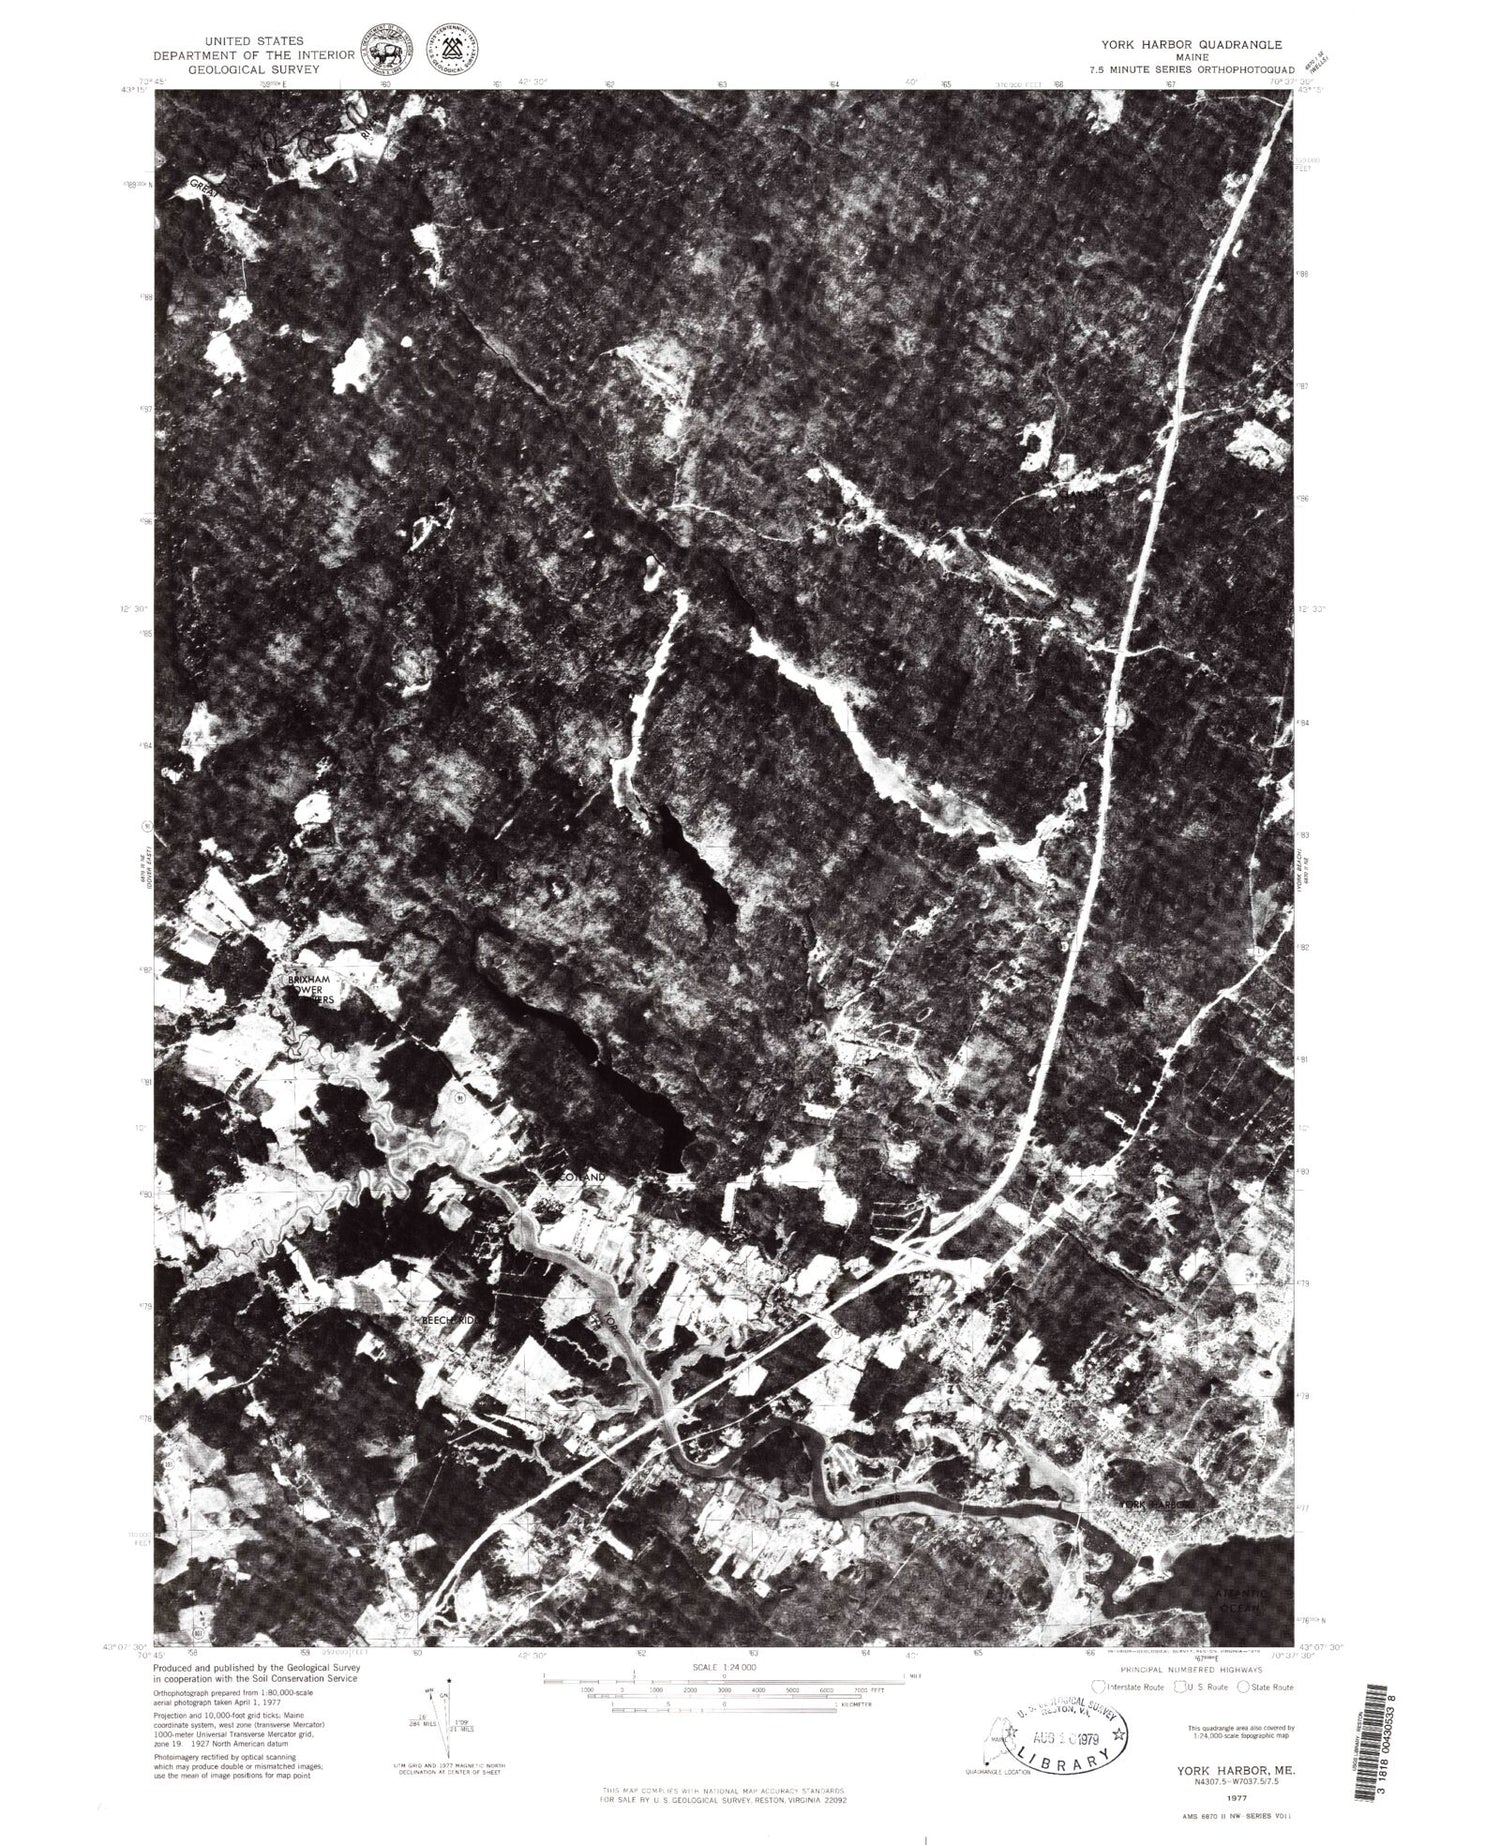 Classic USGS York Harbor Maine 7.5'x7.5' Topo Map Image